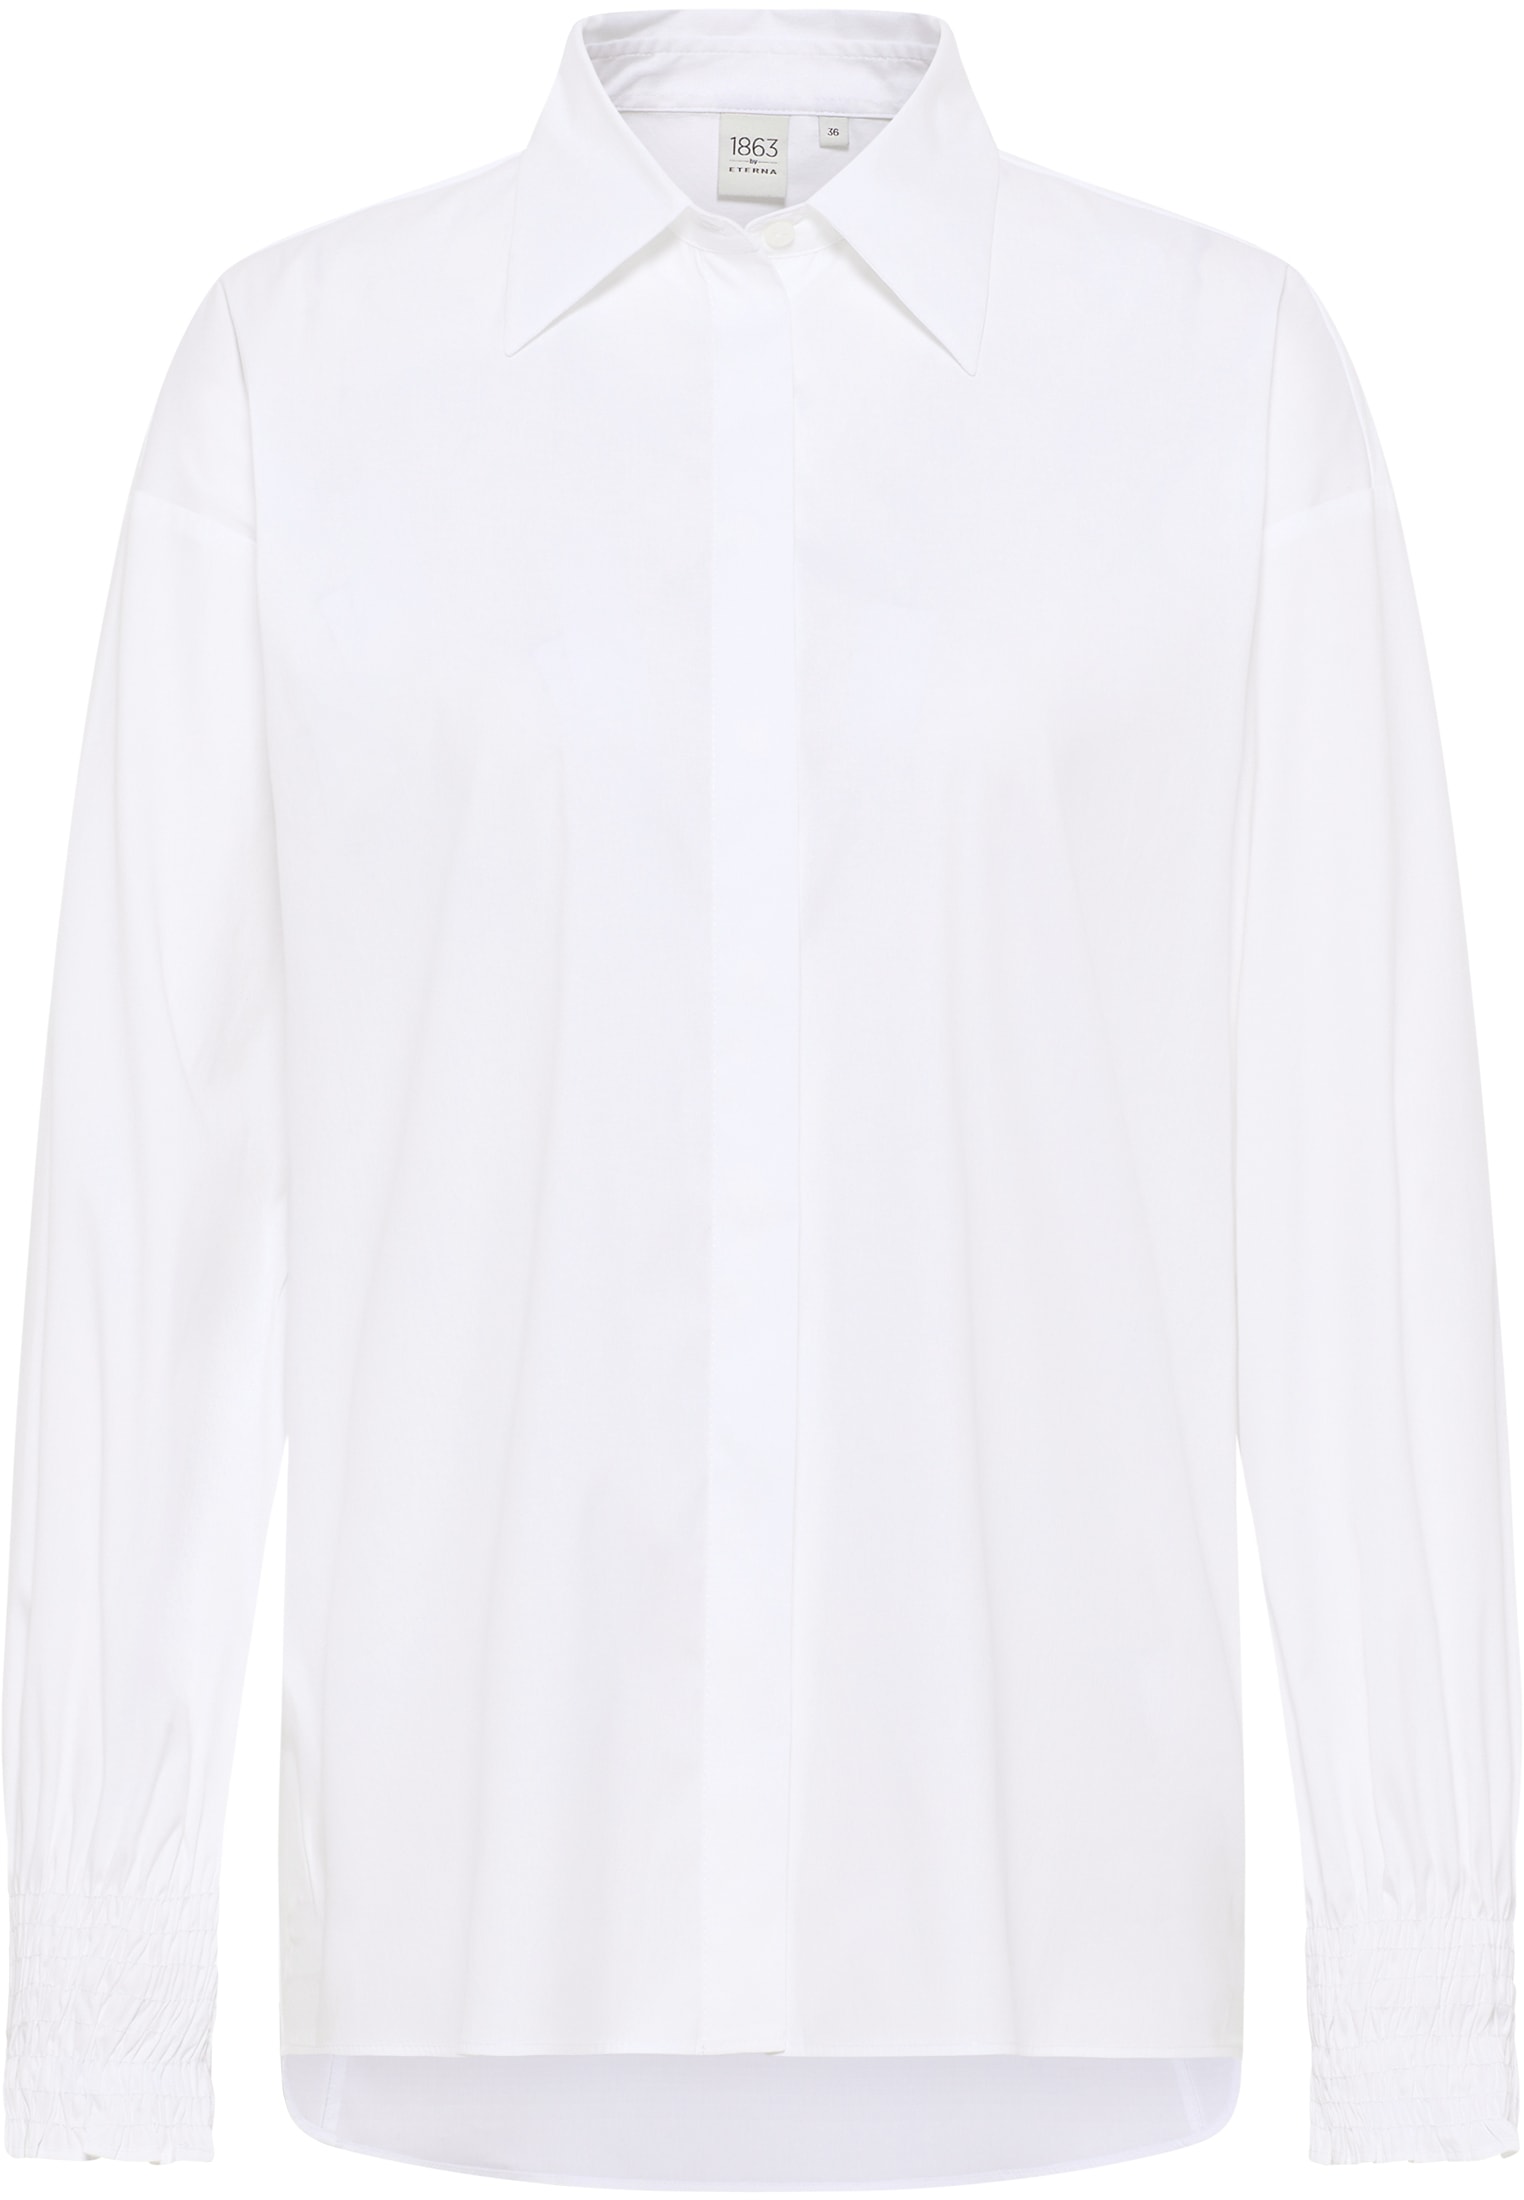 Signature Shirt Bluse in weiß unifarben | weiß | 46 | Langarm |  2BL04347-00-01-46-1/1